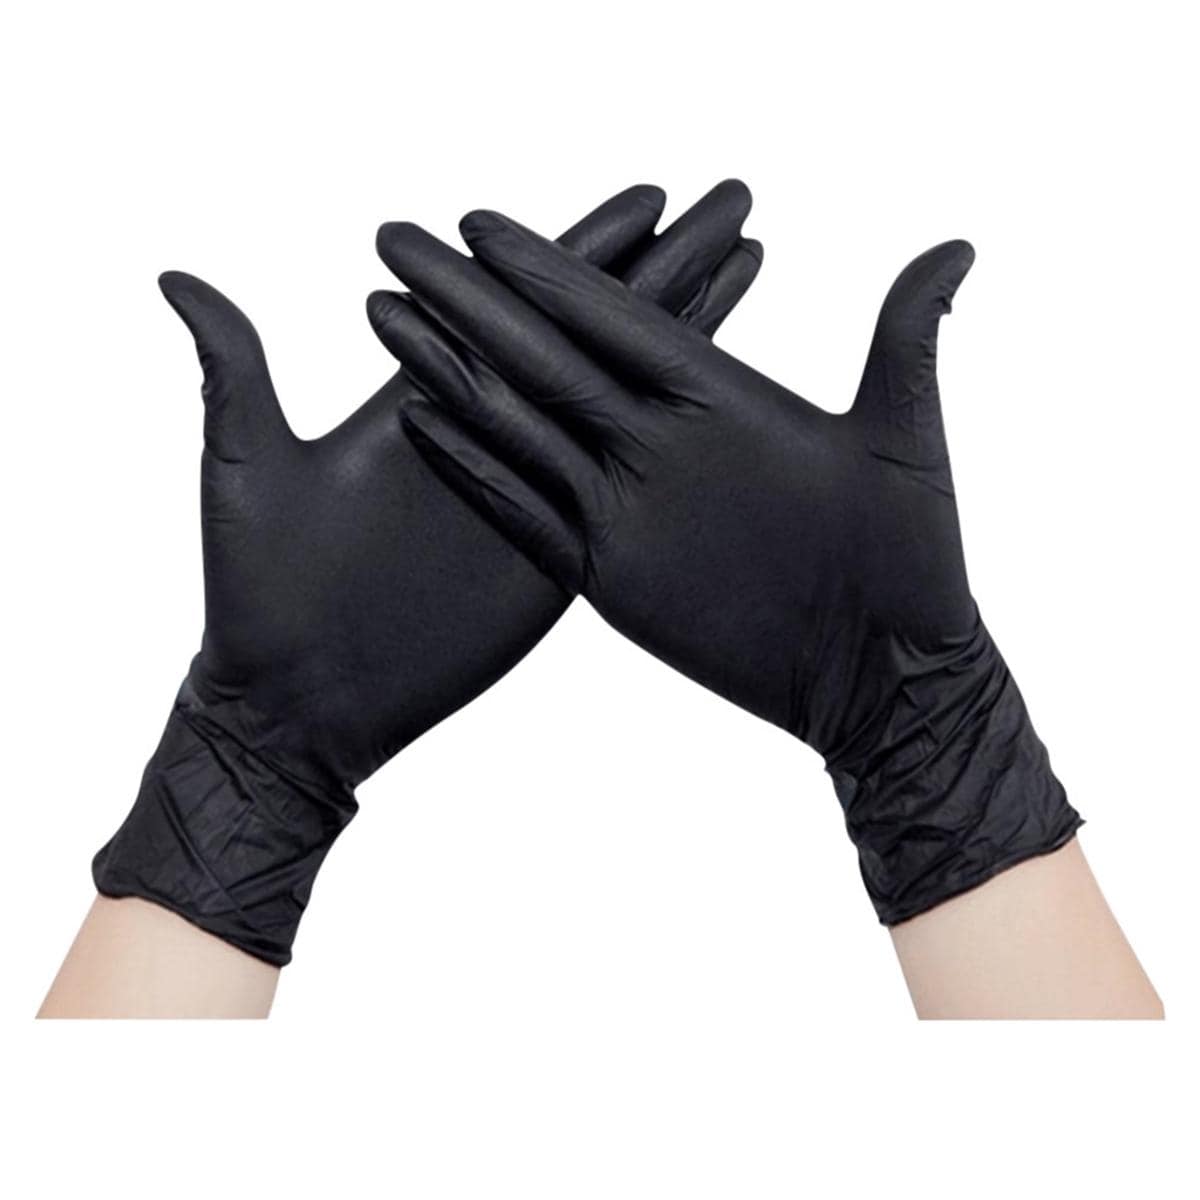 Gespierd Duwen Billy Nitril handschoenen, zwart - L per 100 stuks - Henry Schein Medical